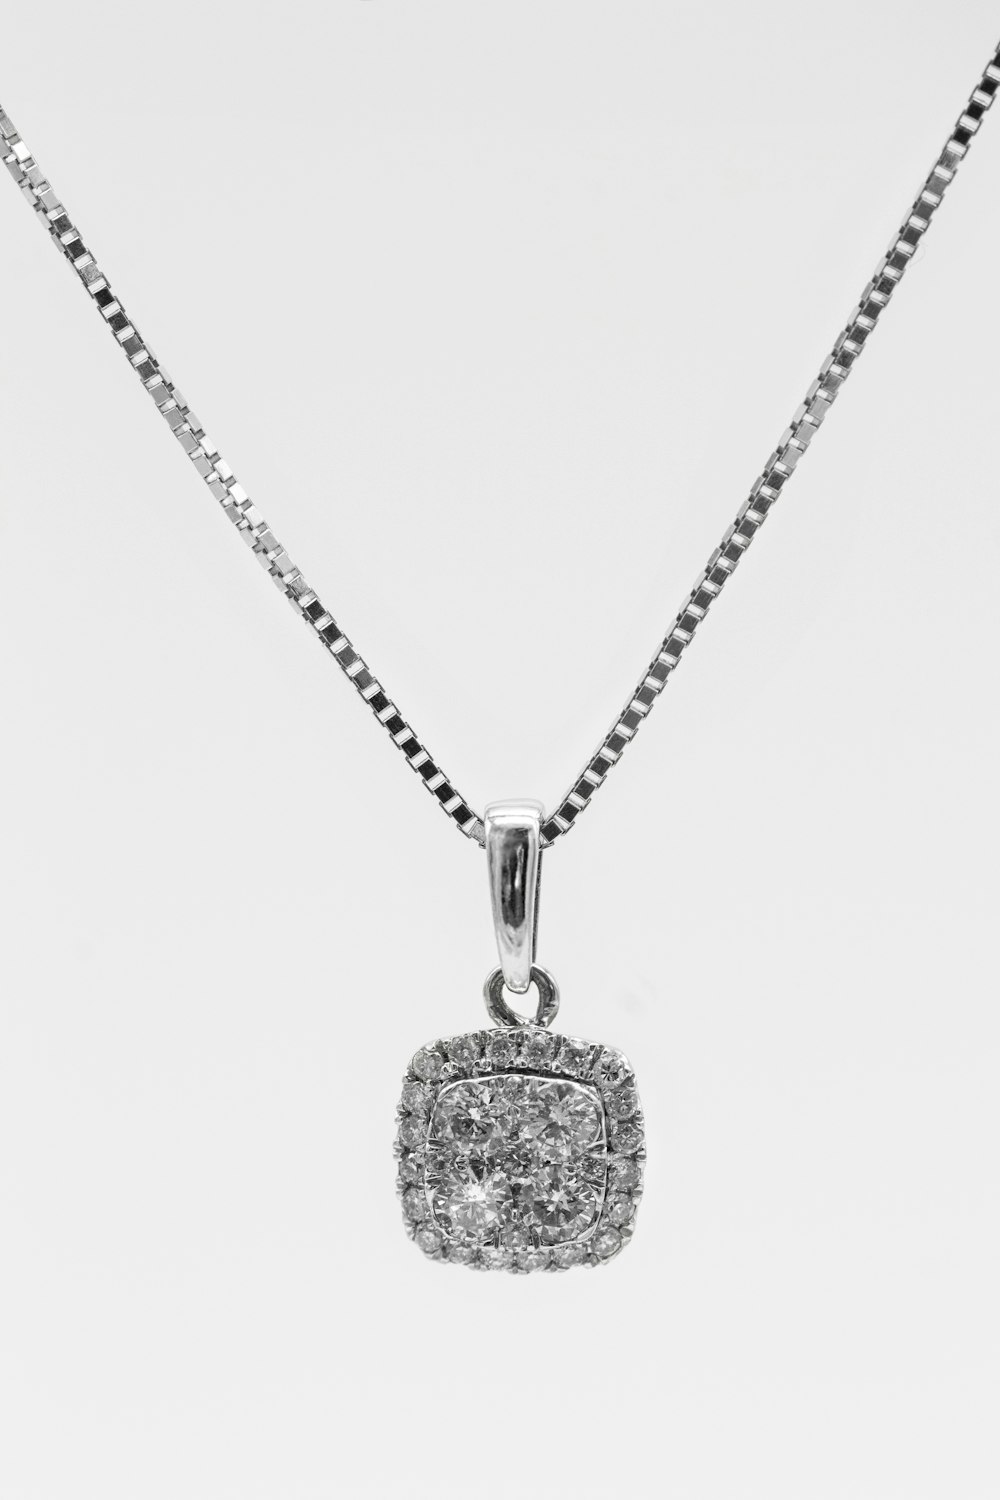 Silberner Herzanhänger Halskette auf weißem Hintergrund